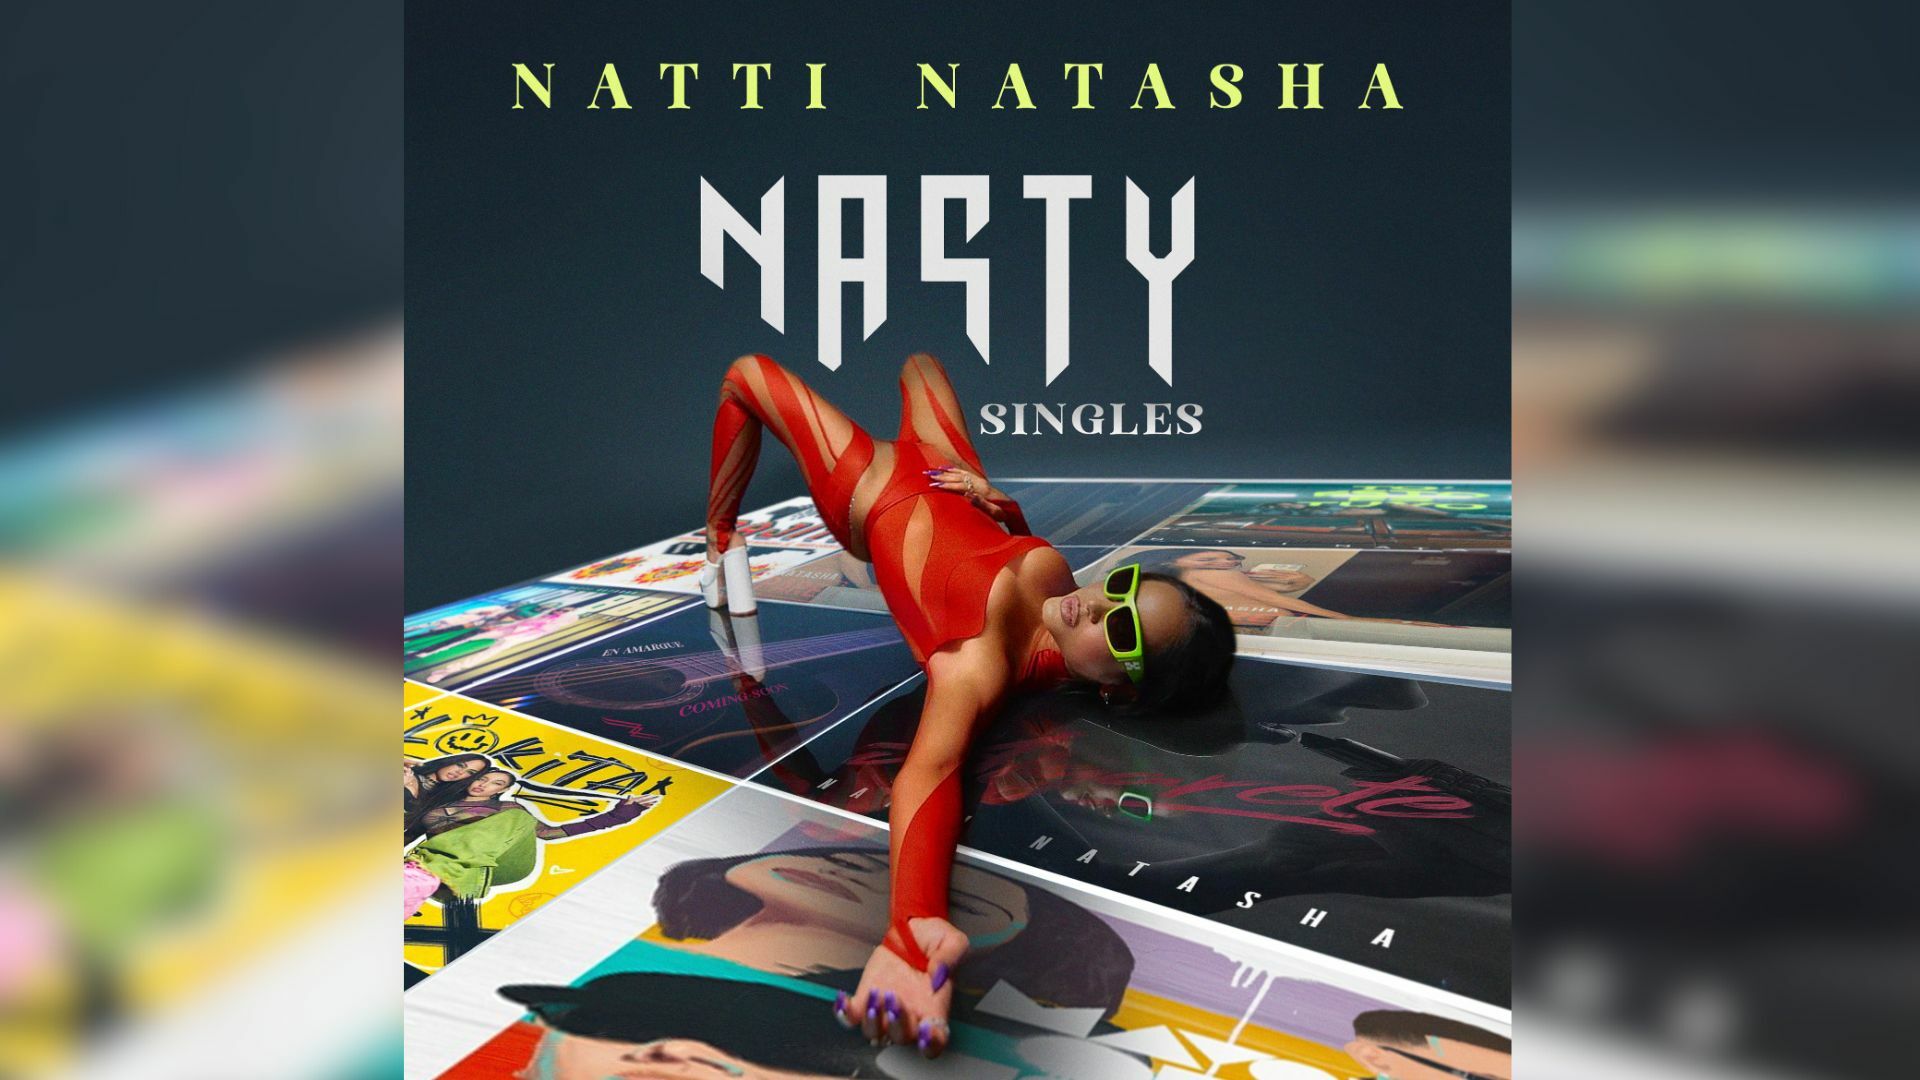 Natti Natasha estrena su nuevo álbum Nasty Singles, en donde explora sentimientos extremos